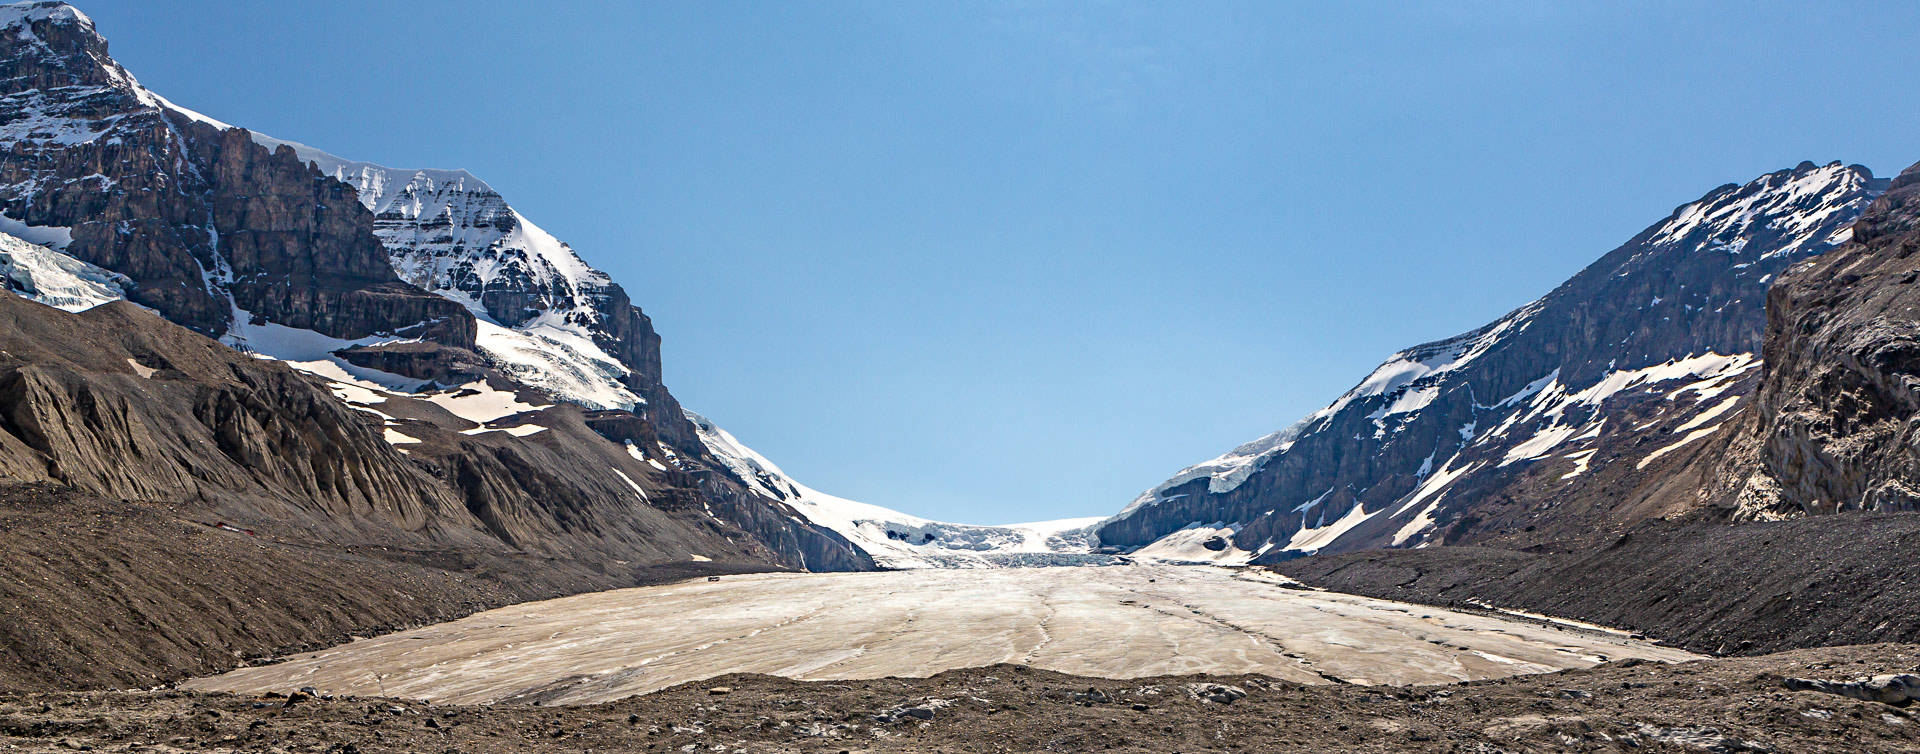 Glacier Athabasca promenade des Glaciers Canada